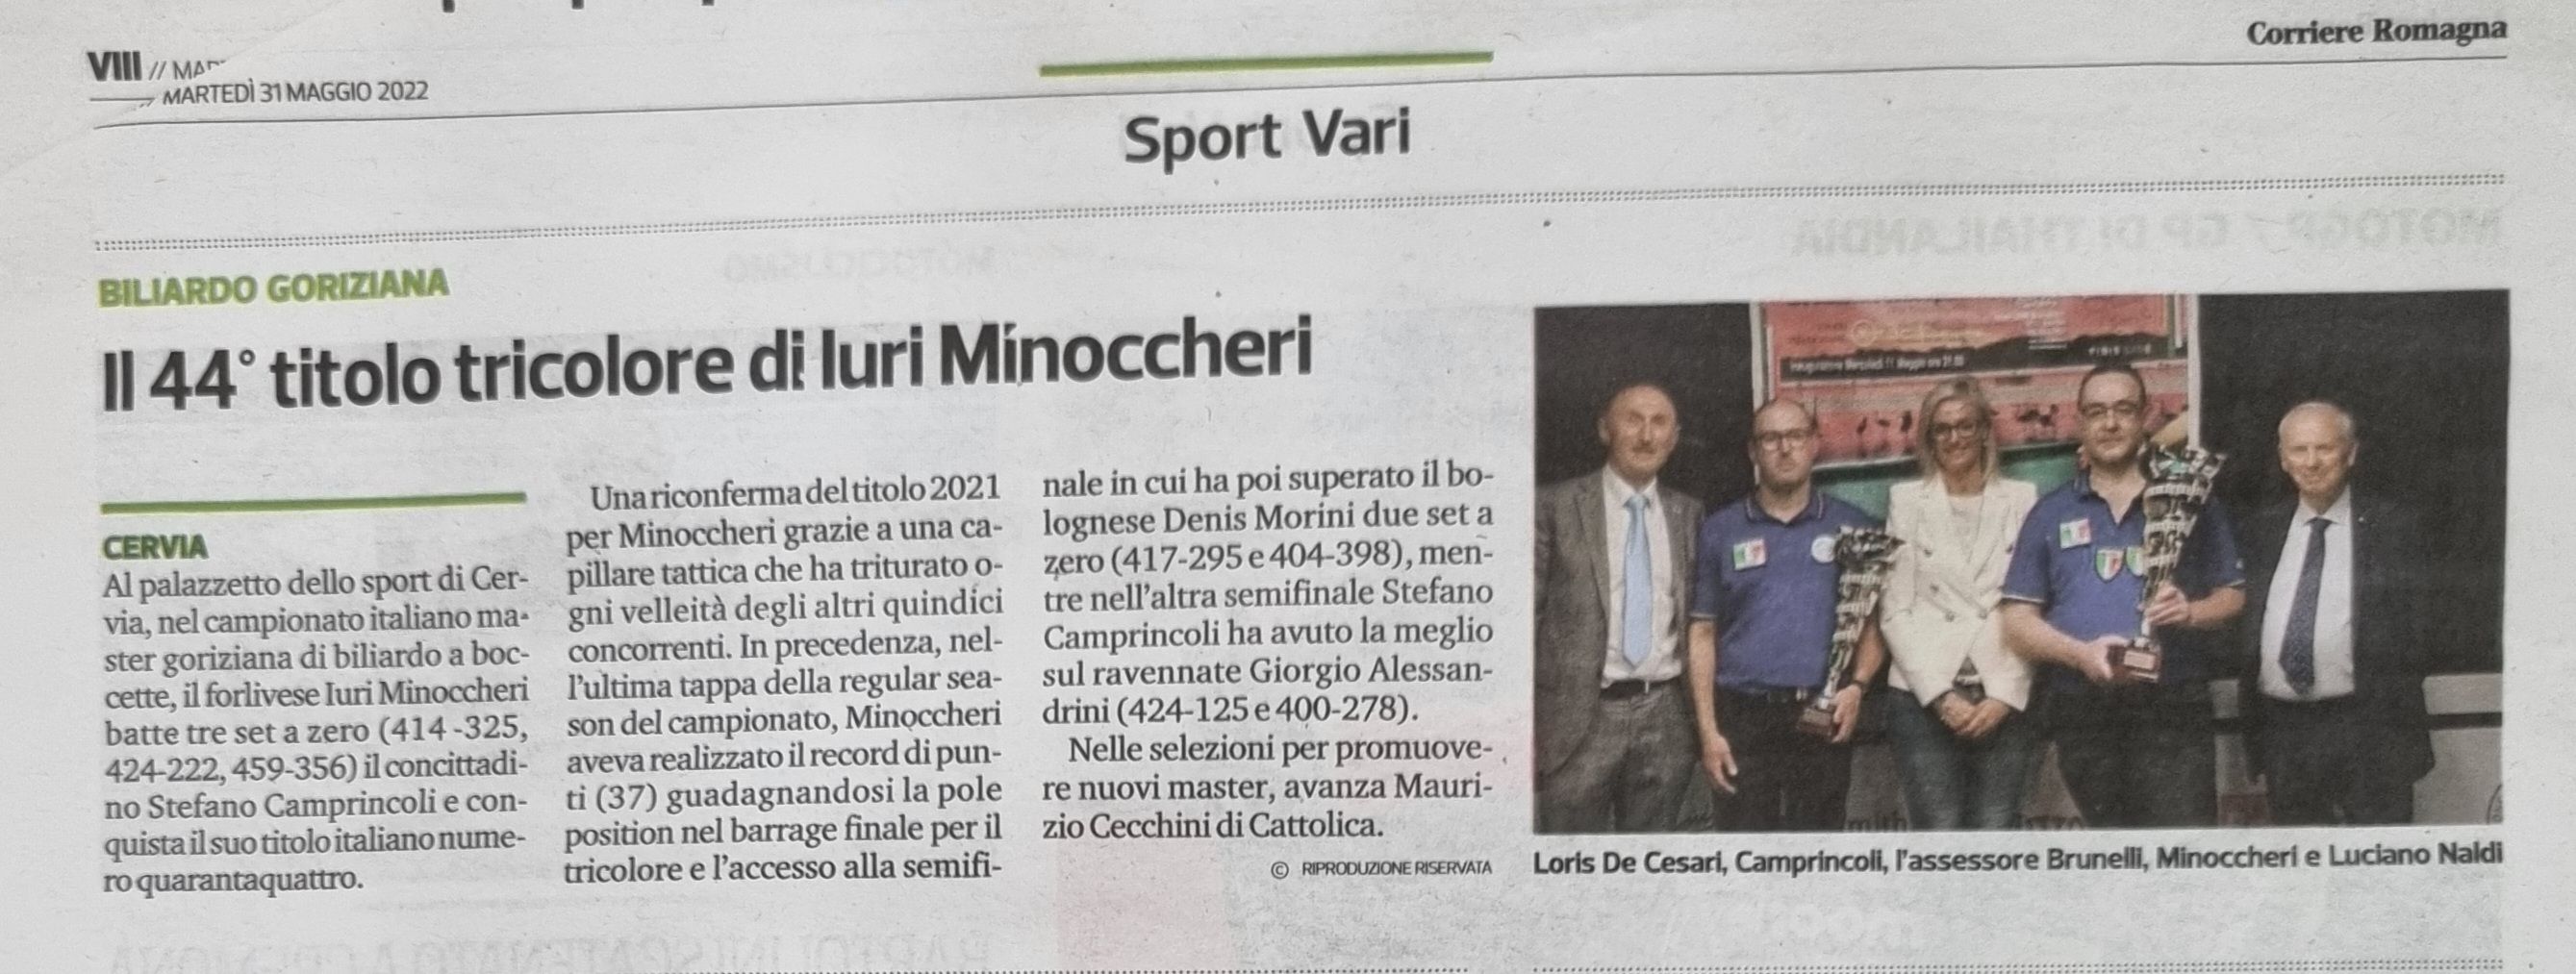 Corriere Romagna Sport 31 maggio 2022